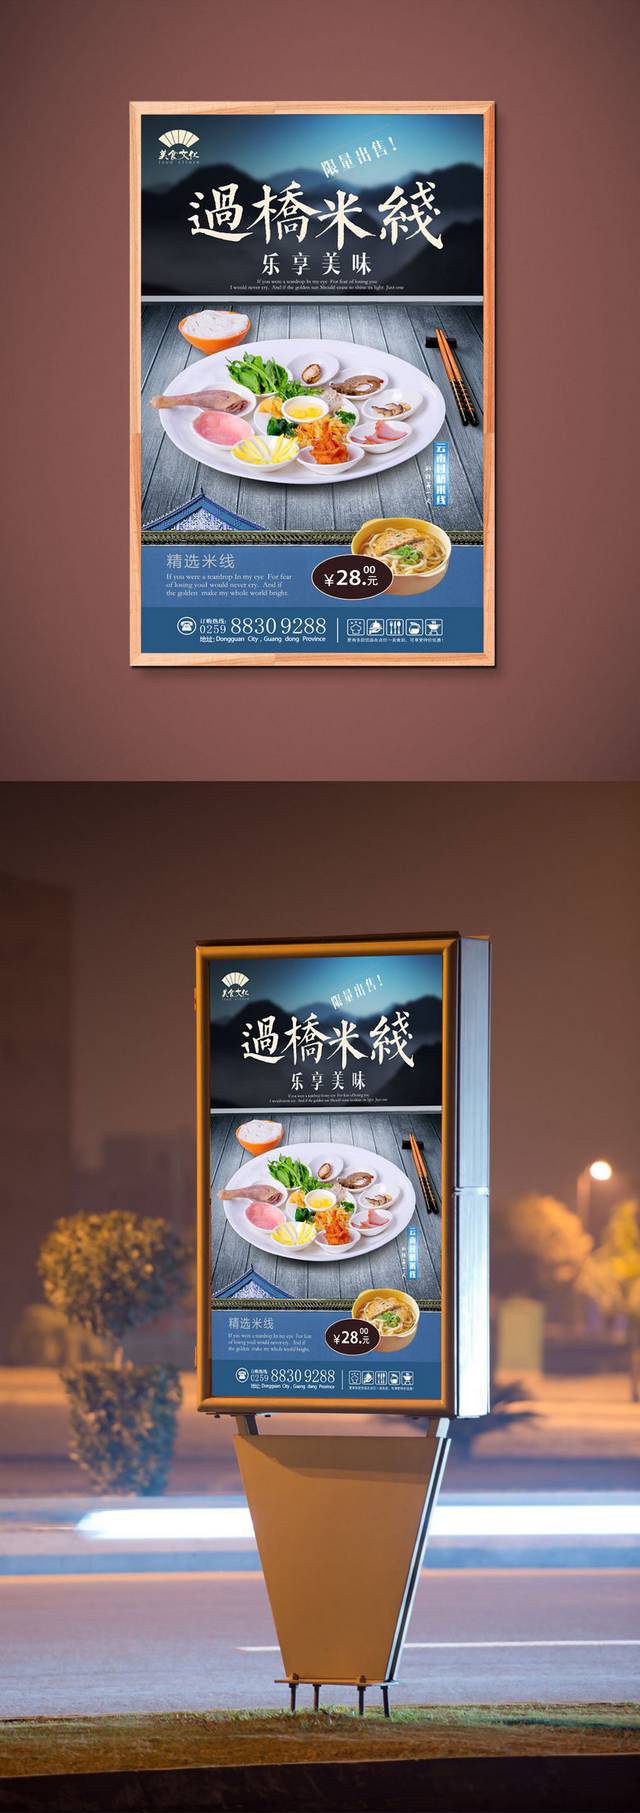 中国风云南过桥米线宣传海报设计